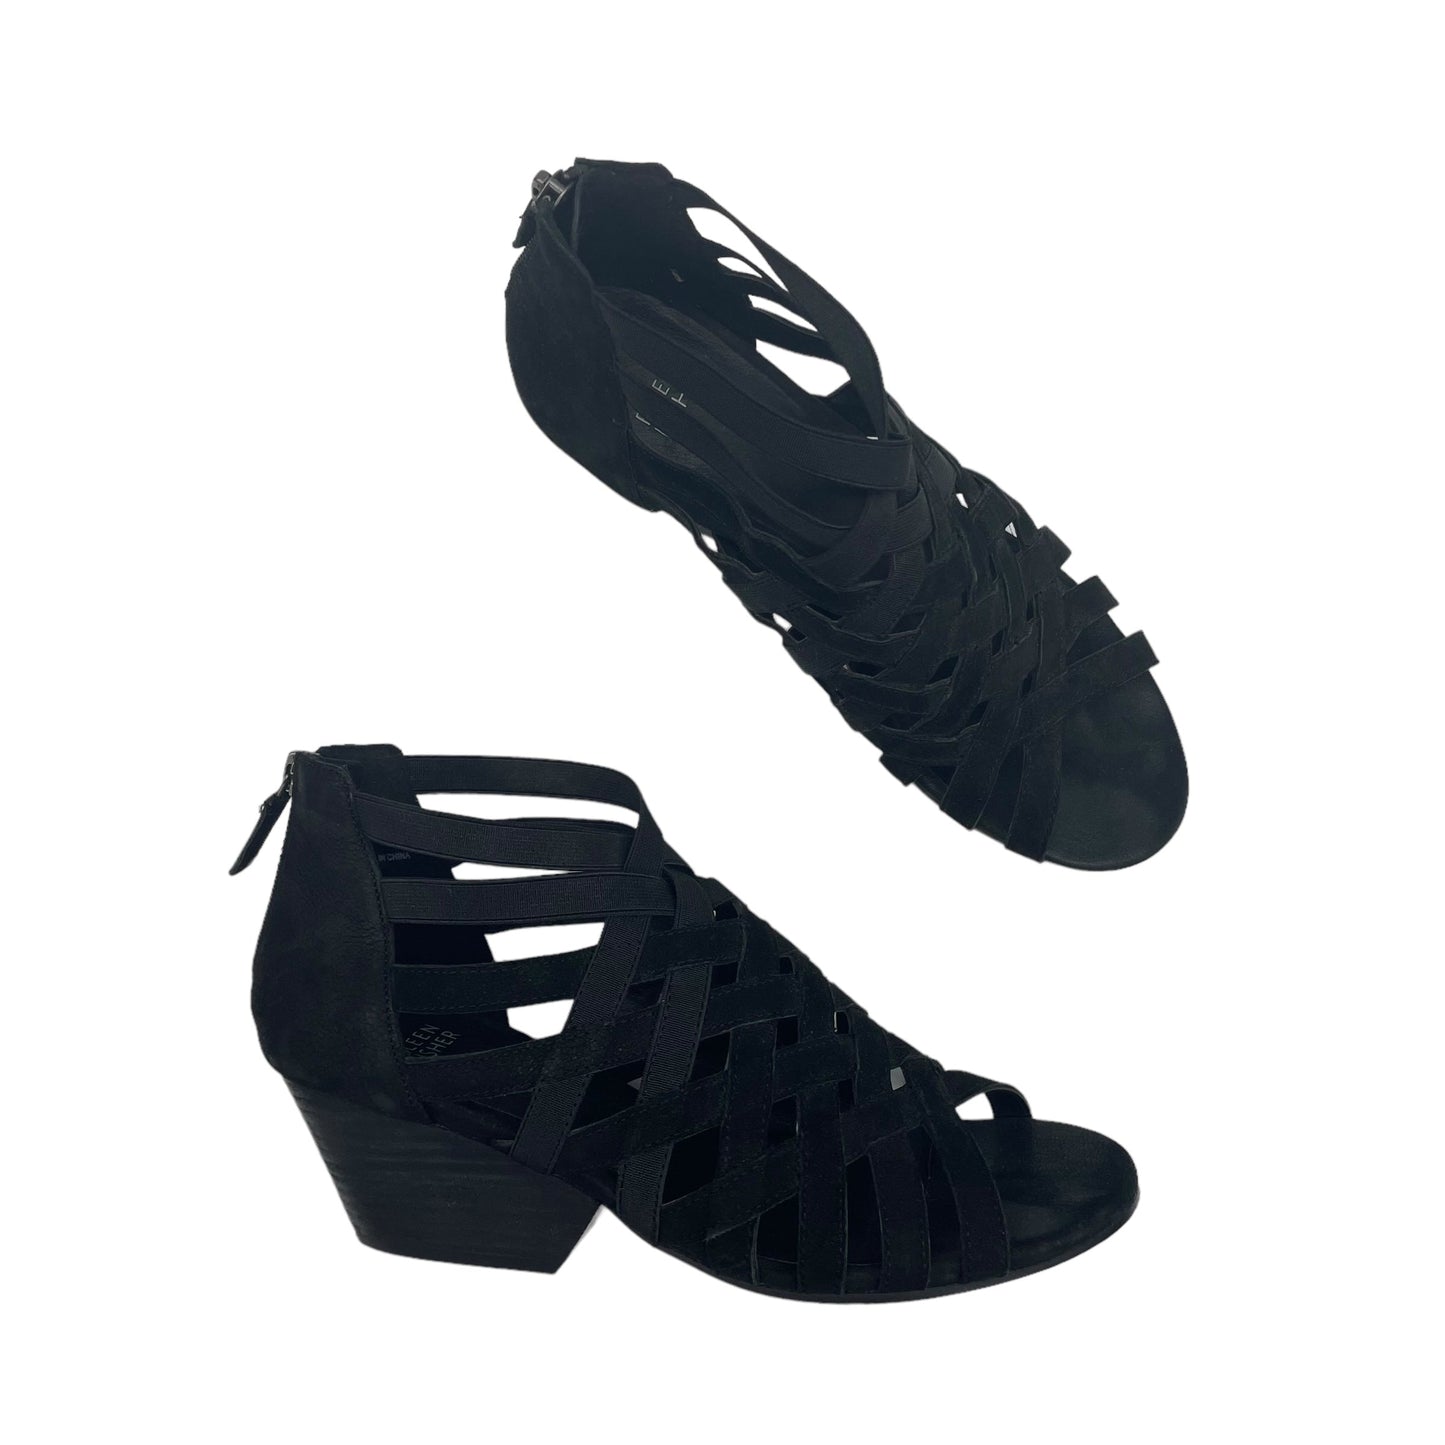 Black Sandals Heels Block Eileen Fisher, Size 8